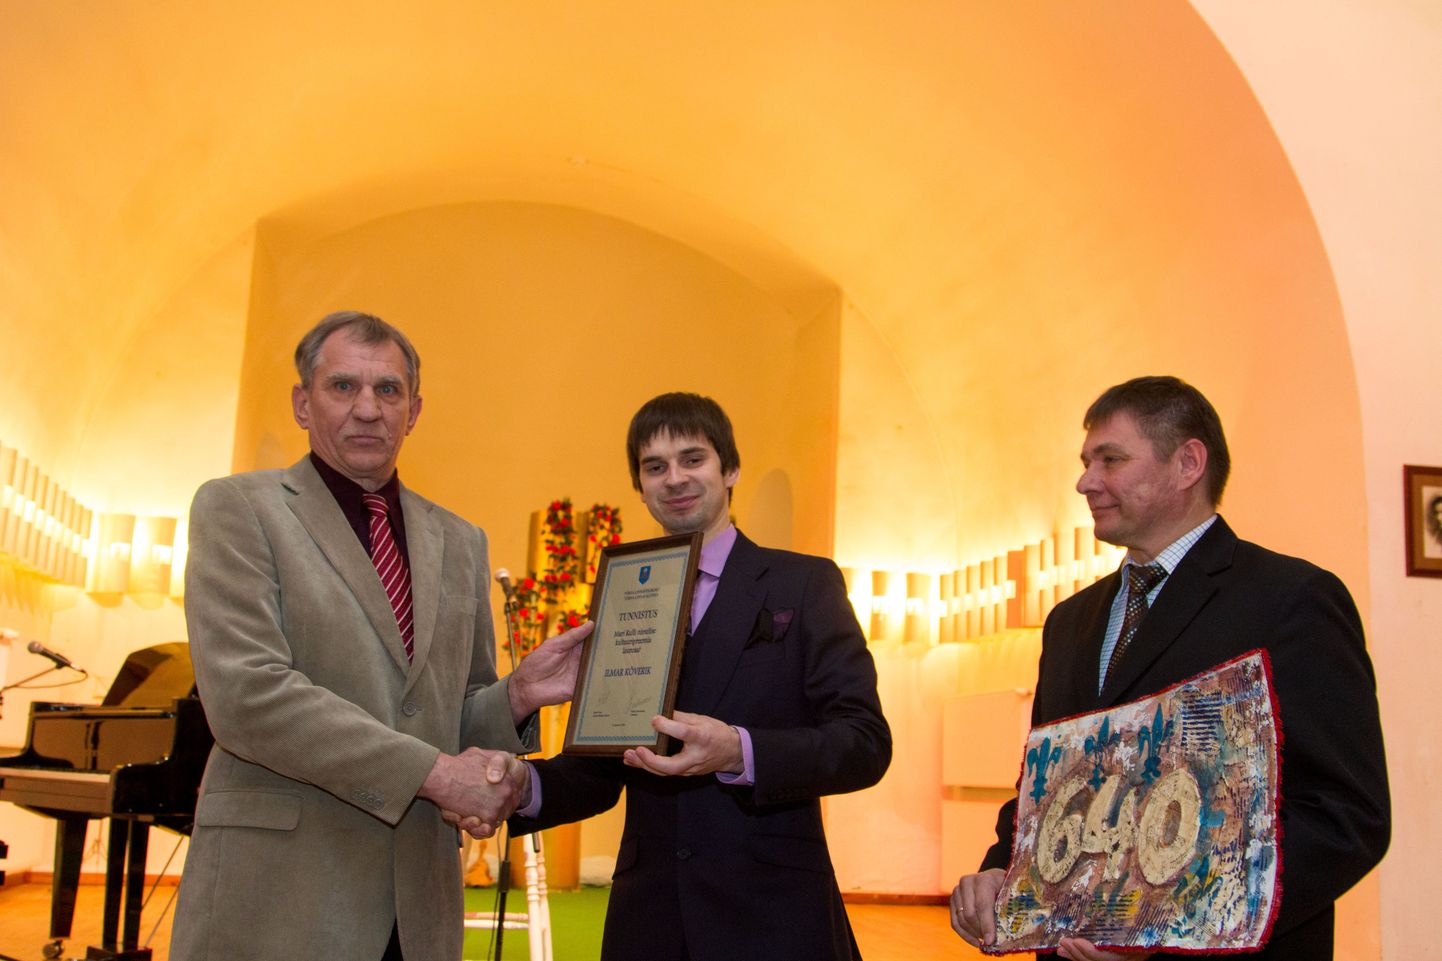 Kultuuripreemia värsket laureaati Ilmar Kõverikku (vasakul) õnnitlesid esimestena Tõrva linnapea Maido Ruusmann ning maavalitsuse haridus- ja kultuuritalituse juhataja Kalle Vister.